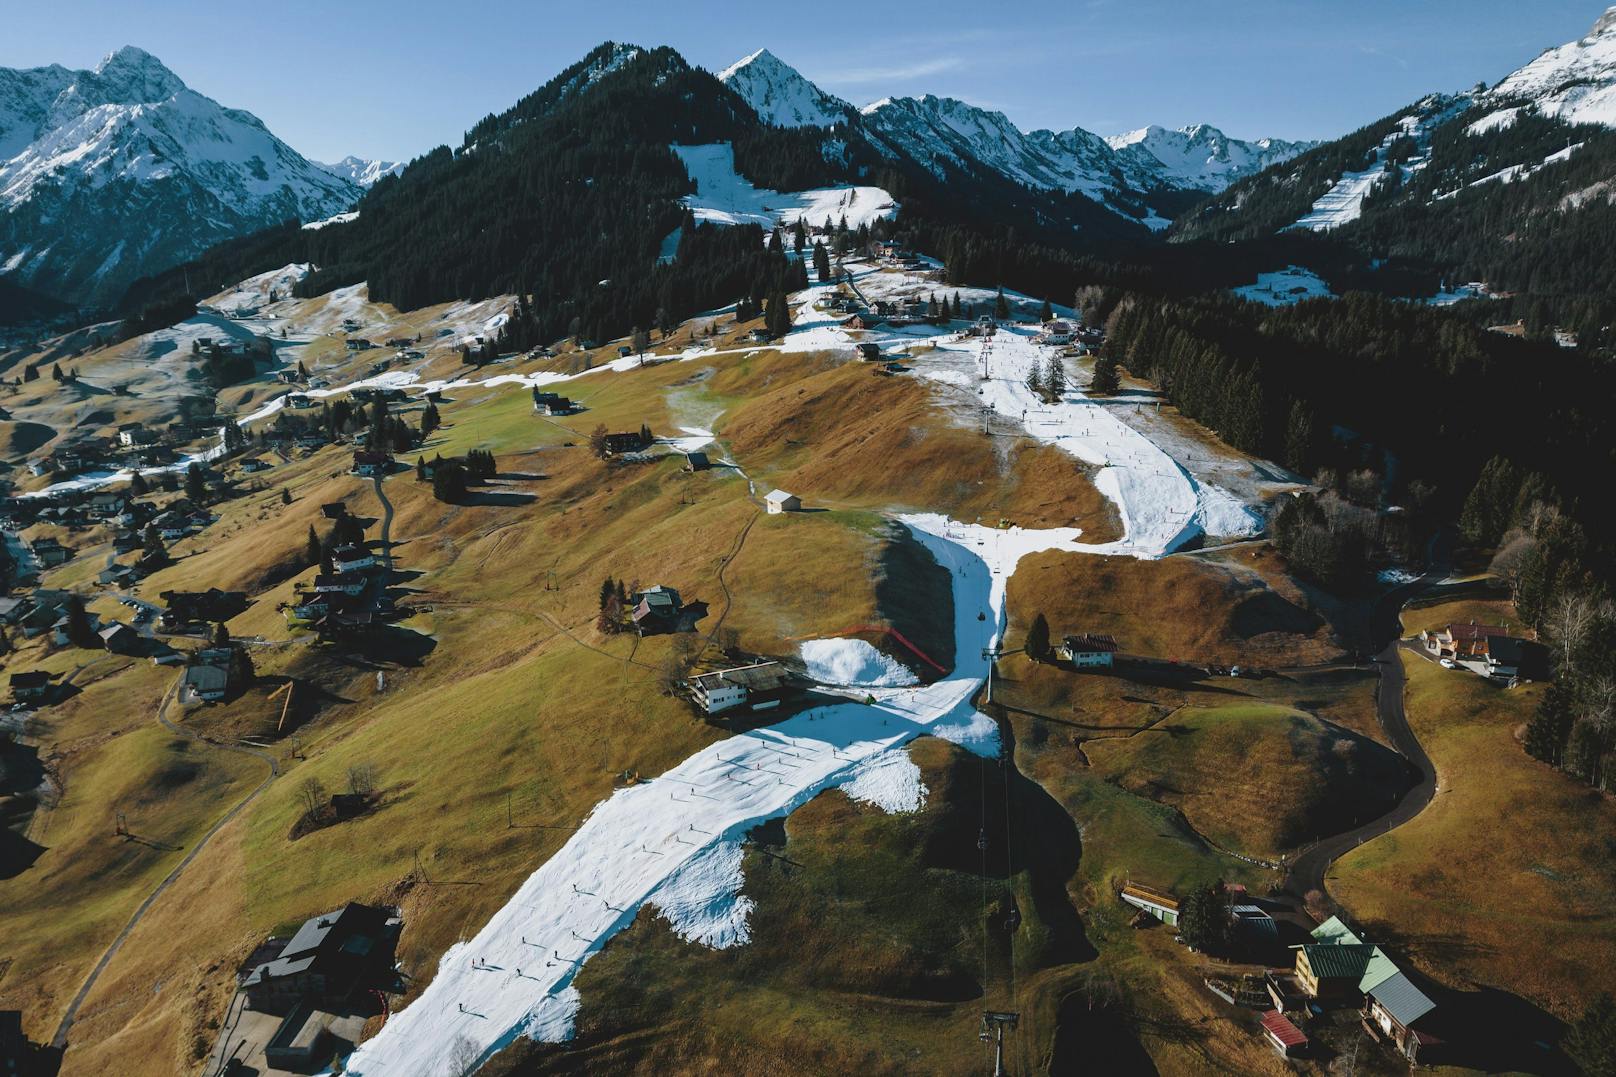 Wärmere Temperaturen infolge der Klimakrise lassen&nbsp;den Schnee in den Alpen schmelzen. Wird das Skivergnügen bald der Vergangenheit angehören?